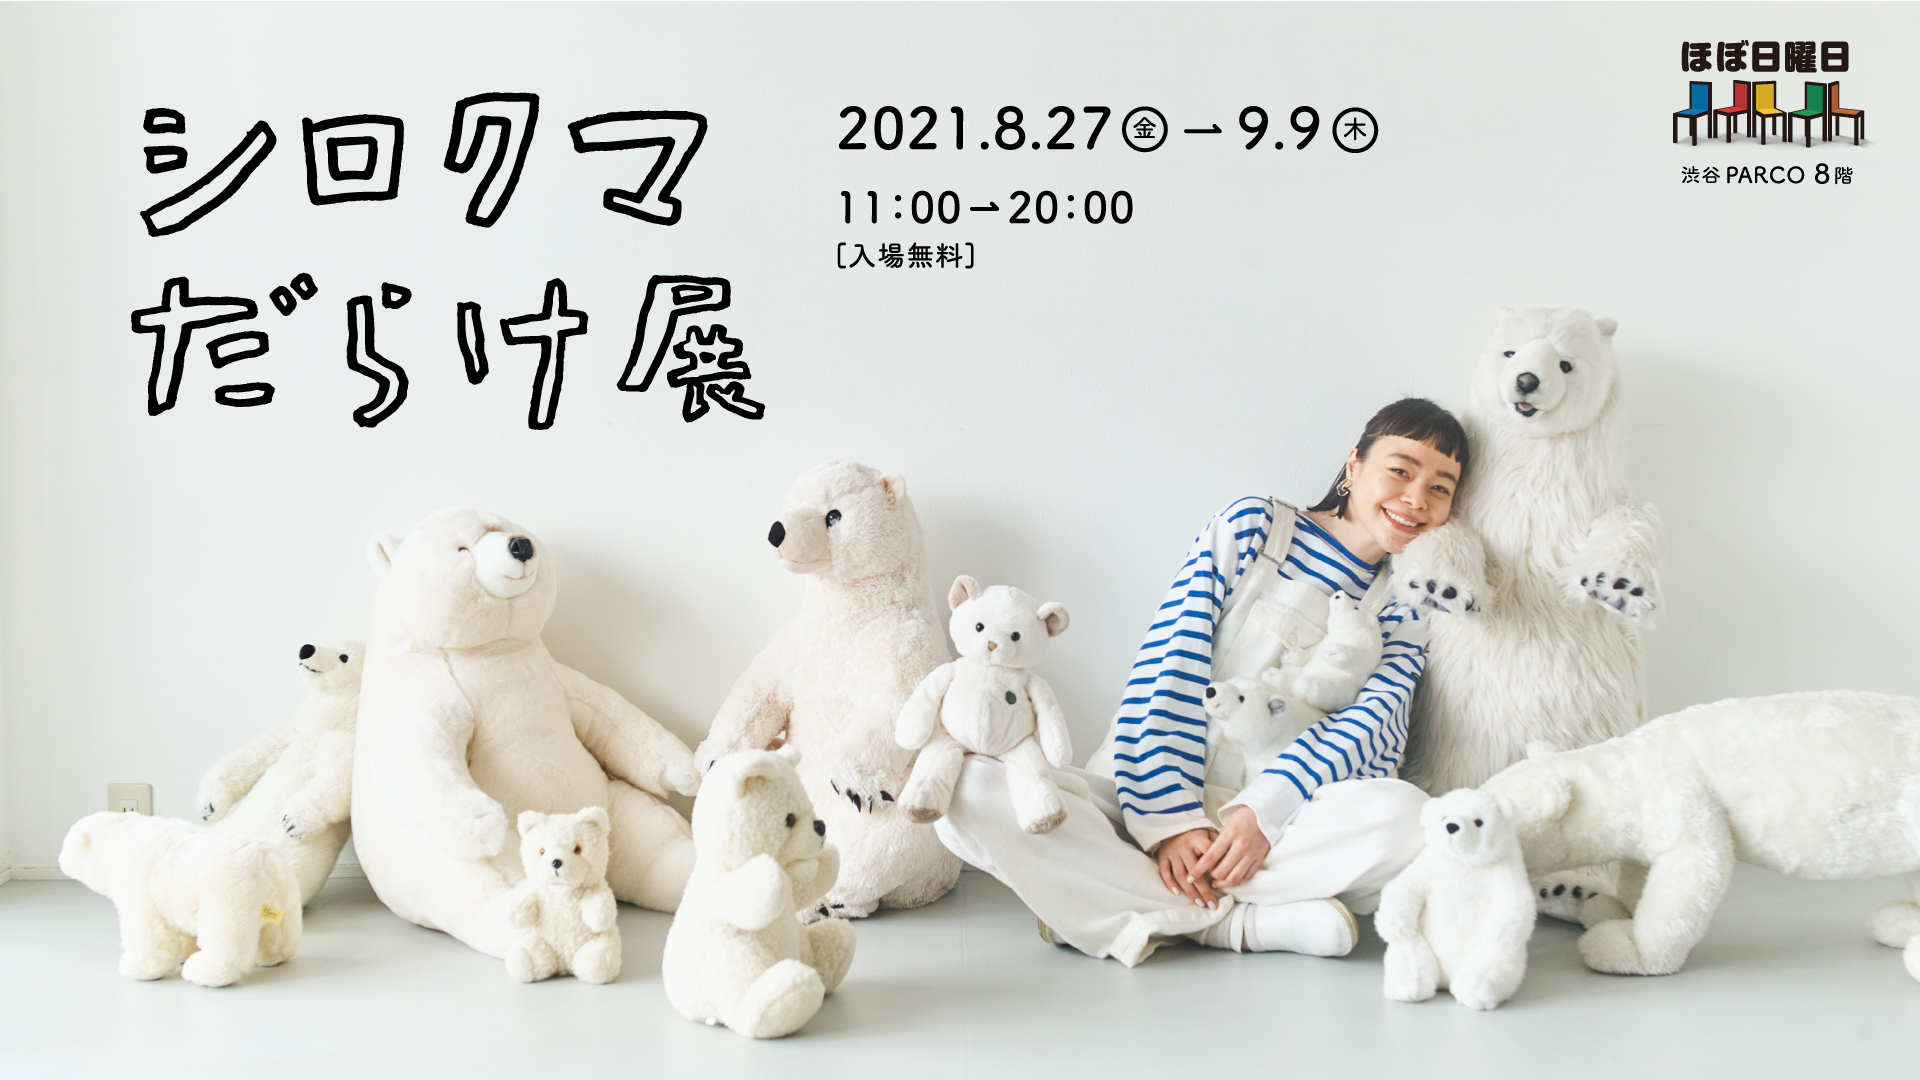 あっちに シロクマ こっちにも シロクマ どこを見てもシロクマだらけ シロクマだらけ展 渋谷parcoで開催 8 17追記 展示内容を一部変更します ほぼ日のプレスリリース